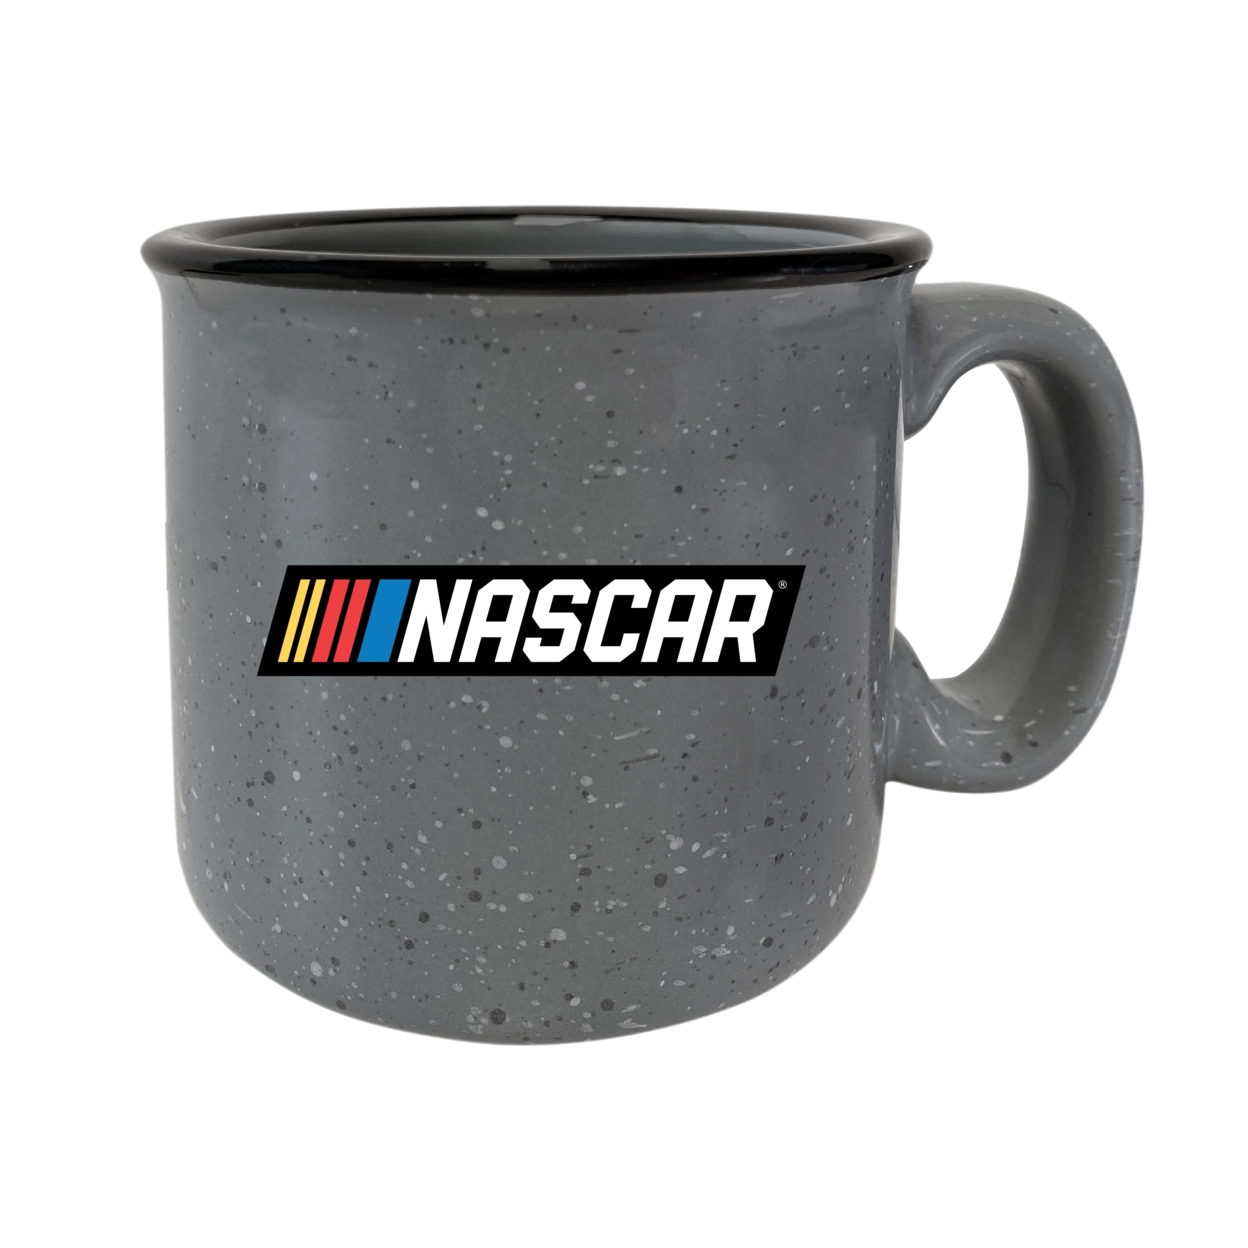 NASCAR Officially Licensed Ceramic Camper Mug 16oz - Grey